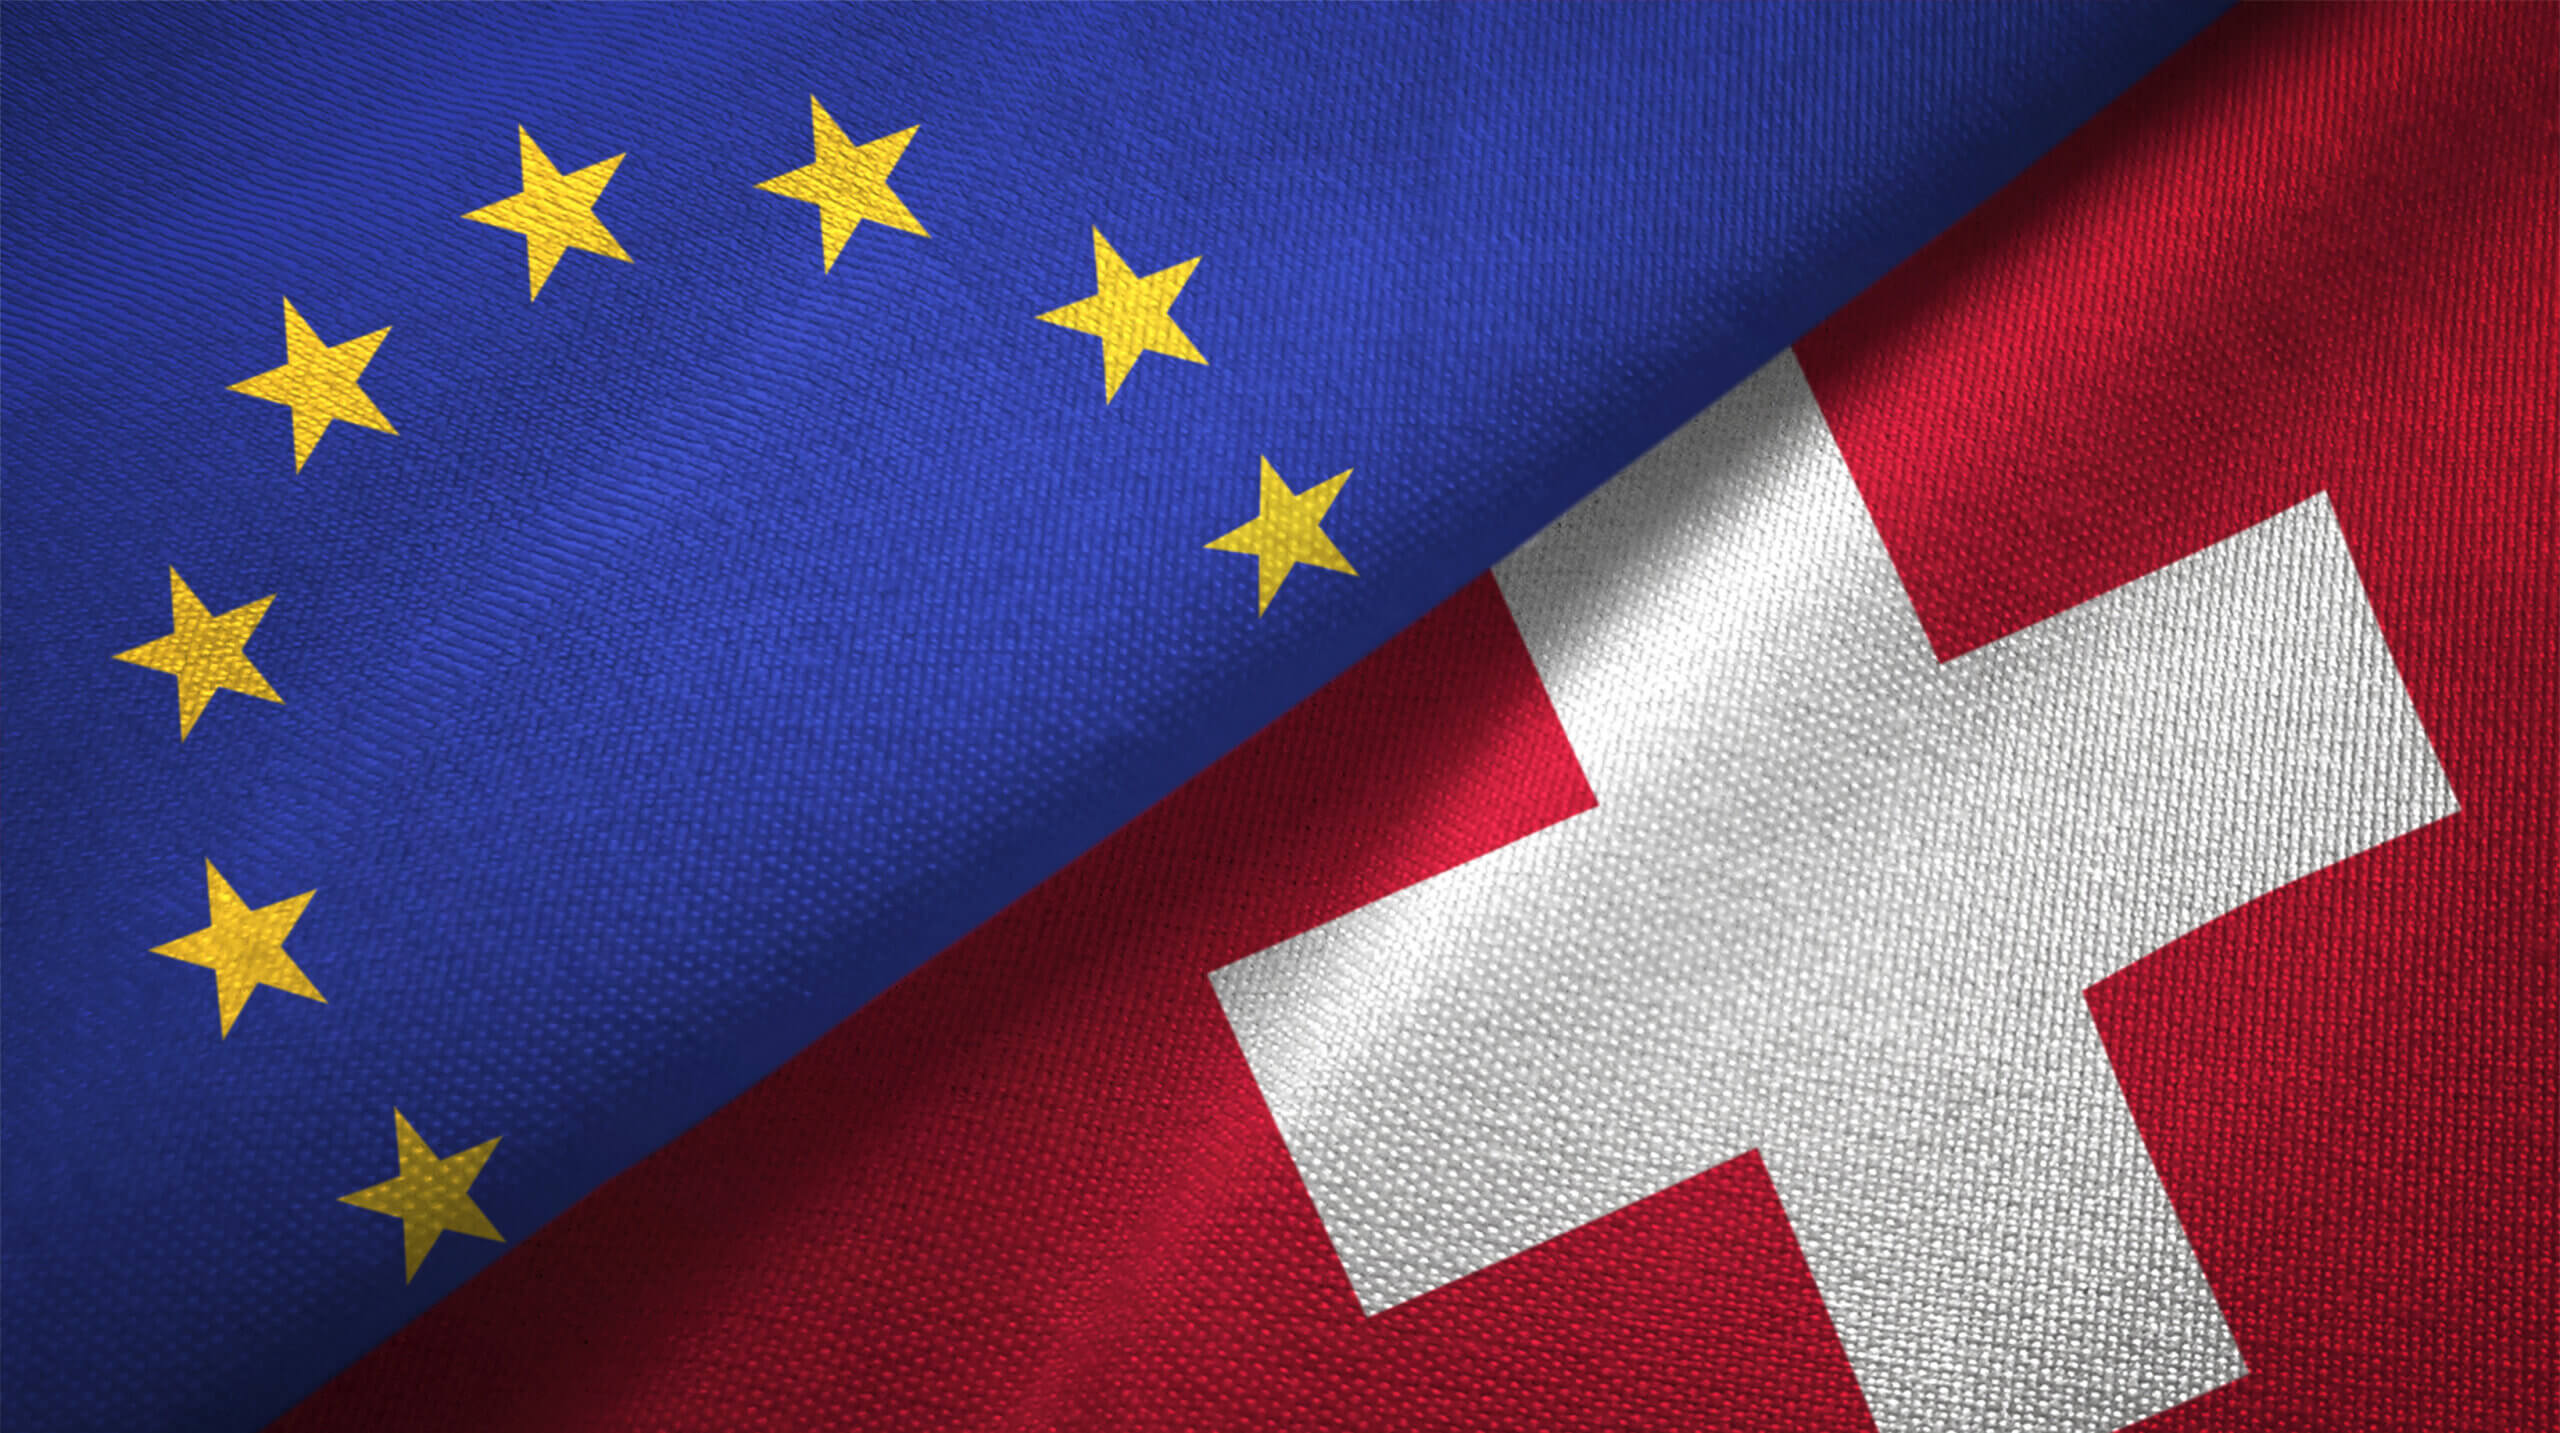 Das Bild zeigt die Flaggen der Europäischen Union (EU) und der Schweiz, die sich diagonal berühren. Die EU-Flagge, erkennbar durch ihren blauen Hintergrund und den Kreis aus 12 goldenen Sternen, liegt oben links im Bild. Diese Symbole repräsentieren Einheit, Solidarität und Frieden in Europa. Entgegengesetzt dazu befindet sich unten rechts im Bild die Flagge der Schweiz. Ihr roter Hintergrund und das weiße Kreuz stehen für die Geschichte, Tradition und Neutralität des Landes. Die diagonalen Positionen der Flaggen erzeugen eine visuelle Verbindung und symbolisieren möglicherweise die engen politischen und wirtschaftlichen Beziehungen zwischen der EU und der Schweiz. Die Flaggen füllen das gesamte Bild aus, was ihre dominante Präsenz und Bedeutung unterstreicht. Die klare und kraftvolle Darstellung der Flaggen betont die Wichtigkeit der beiden politischen Einheiten in Europa. Insgesamt strahlt das Bild eine Atmosphäre von Stabilität, Zusammenarbeit und Respekt aus. Es lädt den Betrachter dazu ein, über die Beziehungen zwischen verschiedenen Ländern und politischen Einheiten nachzudenken und die Vielfalt und Einheit Europas zu würdigen.